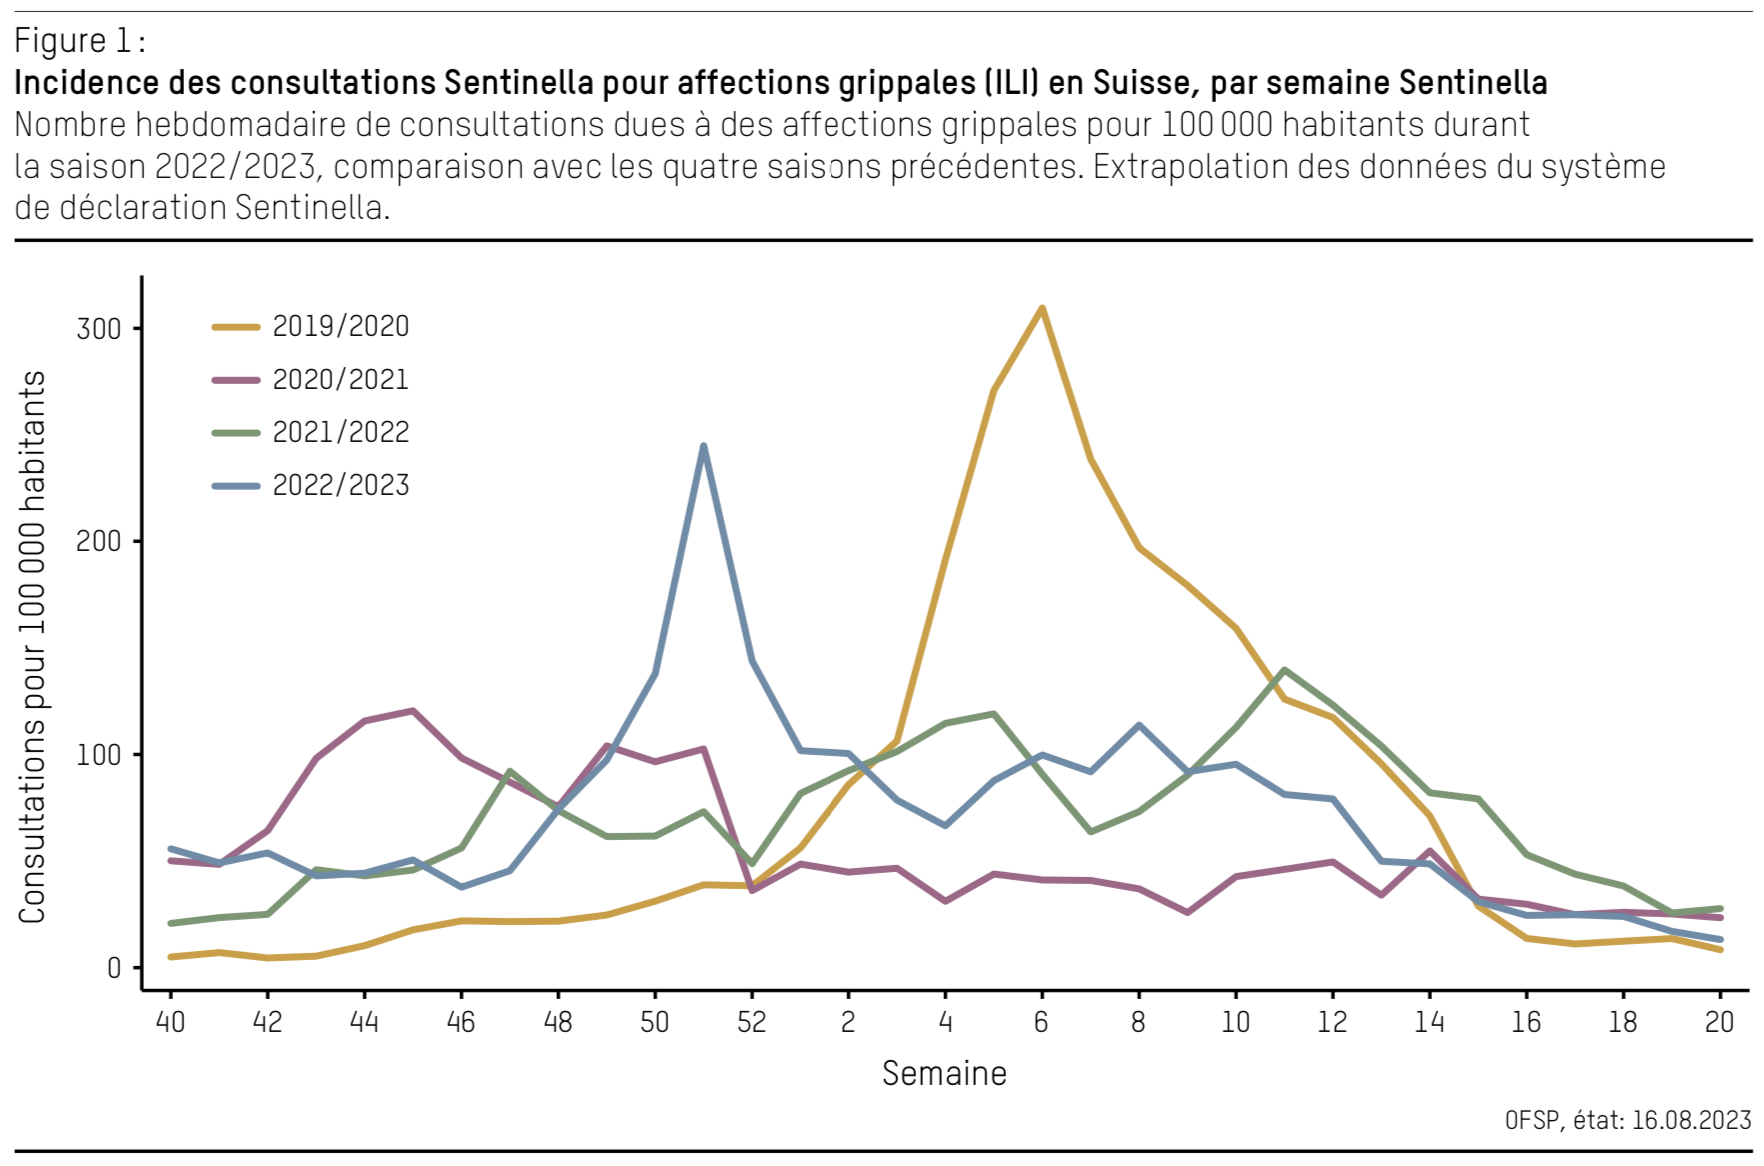 Incidence des consultations Sentinella pour affections grippales ILI en Suisse par semaine Sentinella